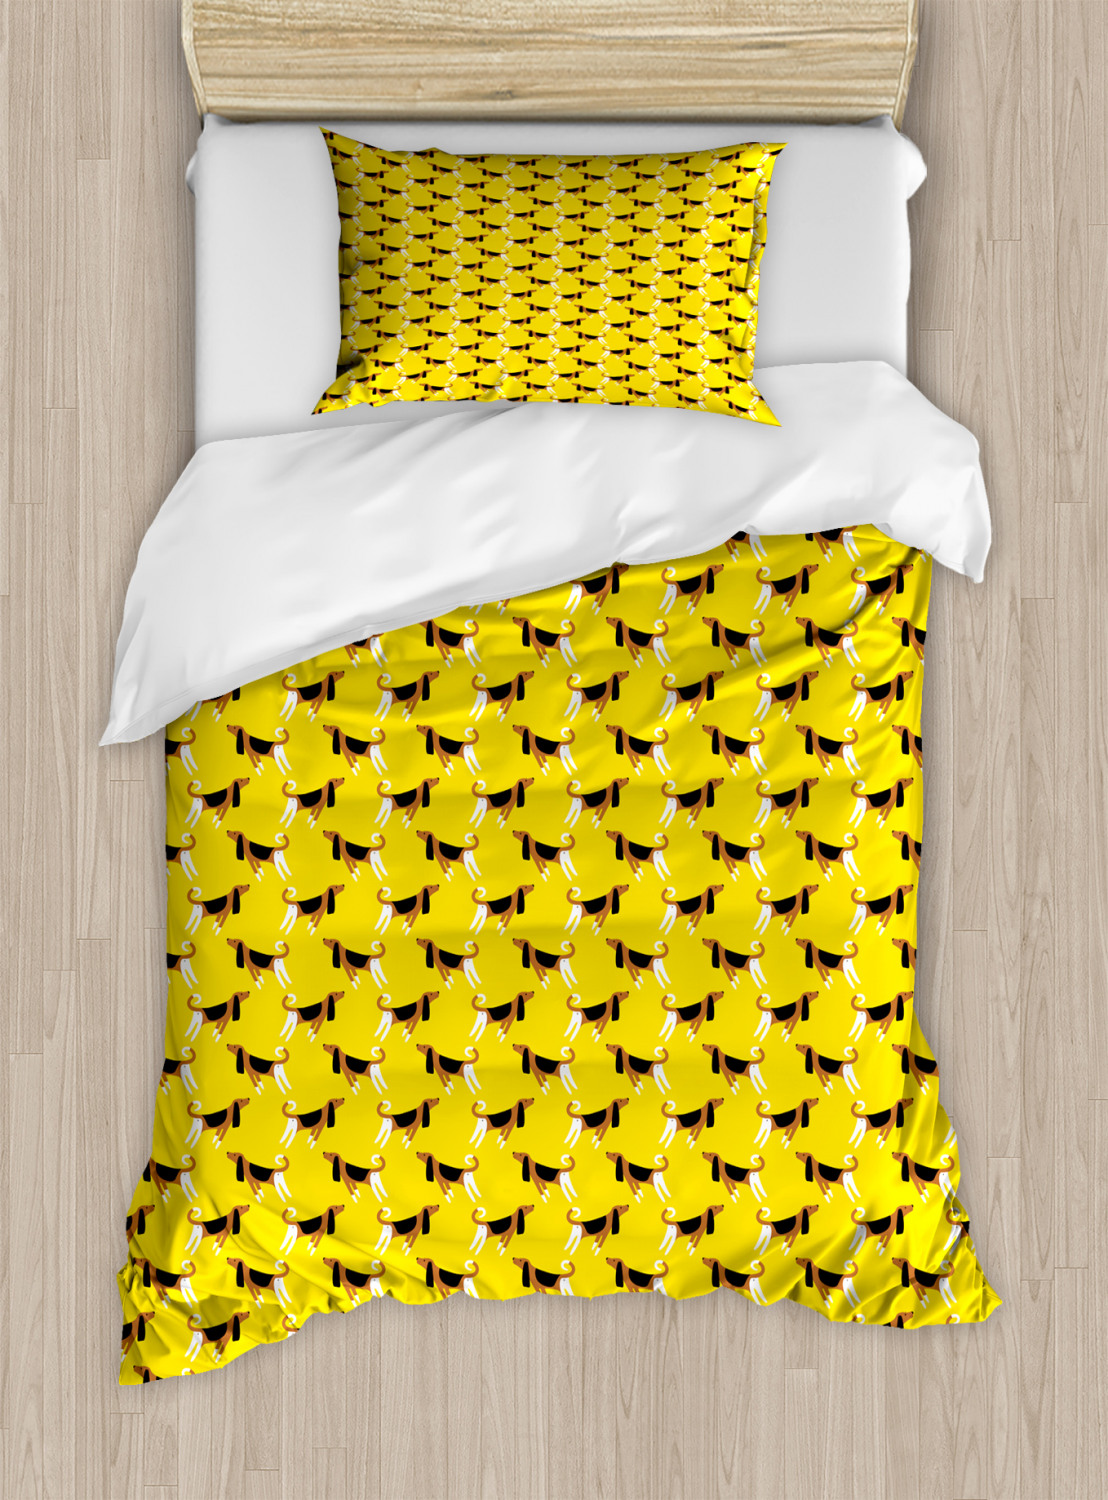 Hunde Bettwäsche Set Fun Pet Charaktere auf Gelb